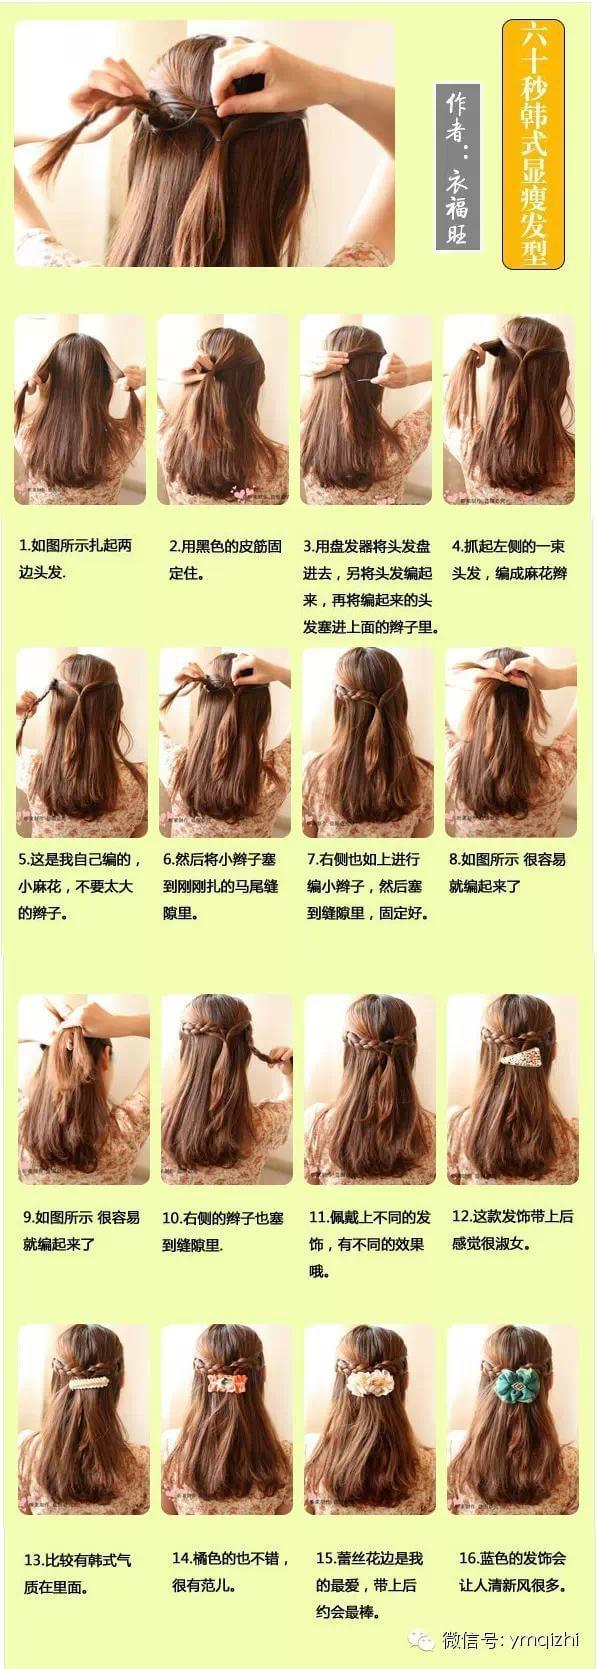 100种扎头发的方法图片